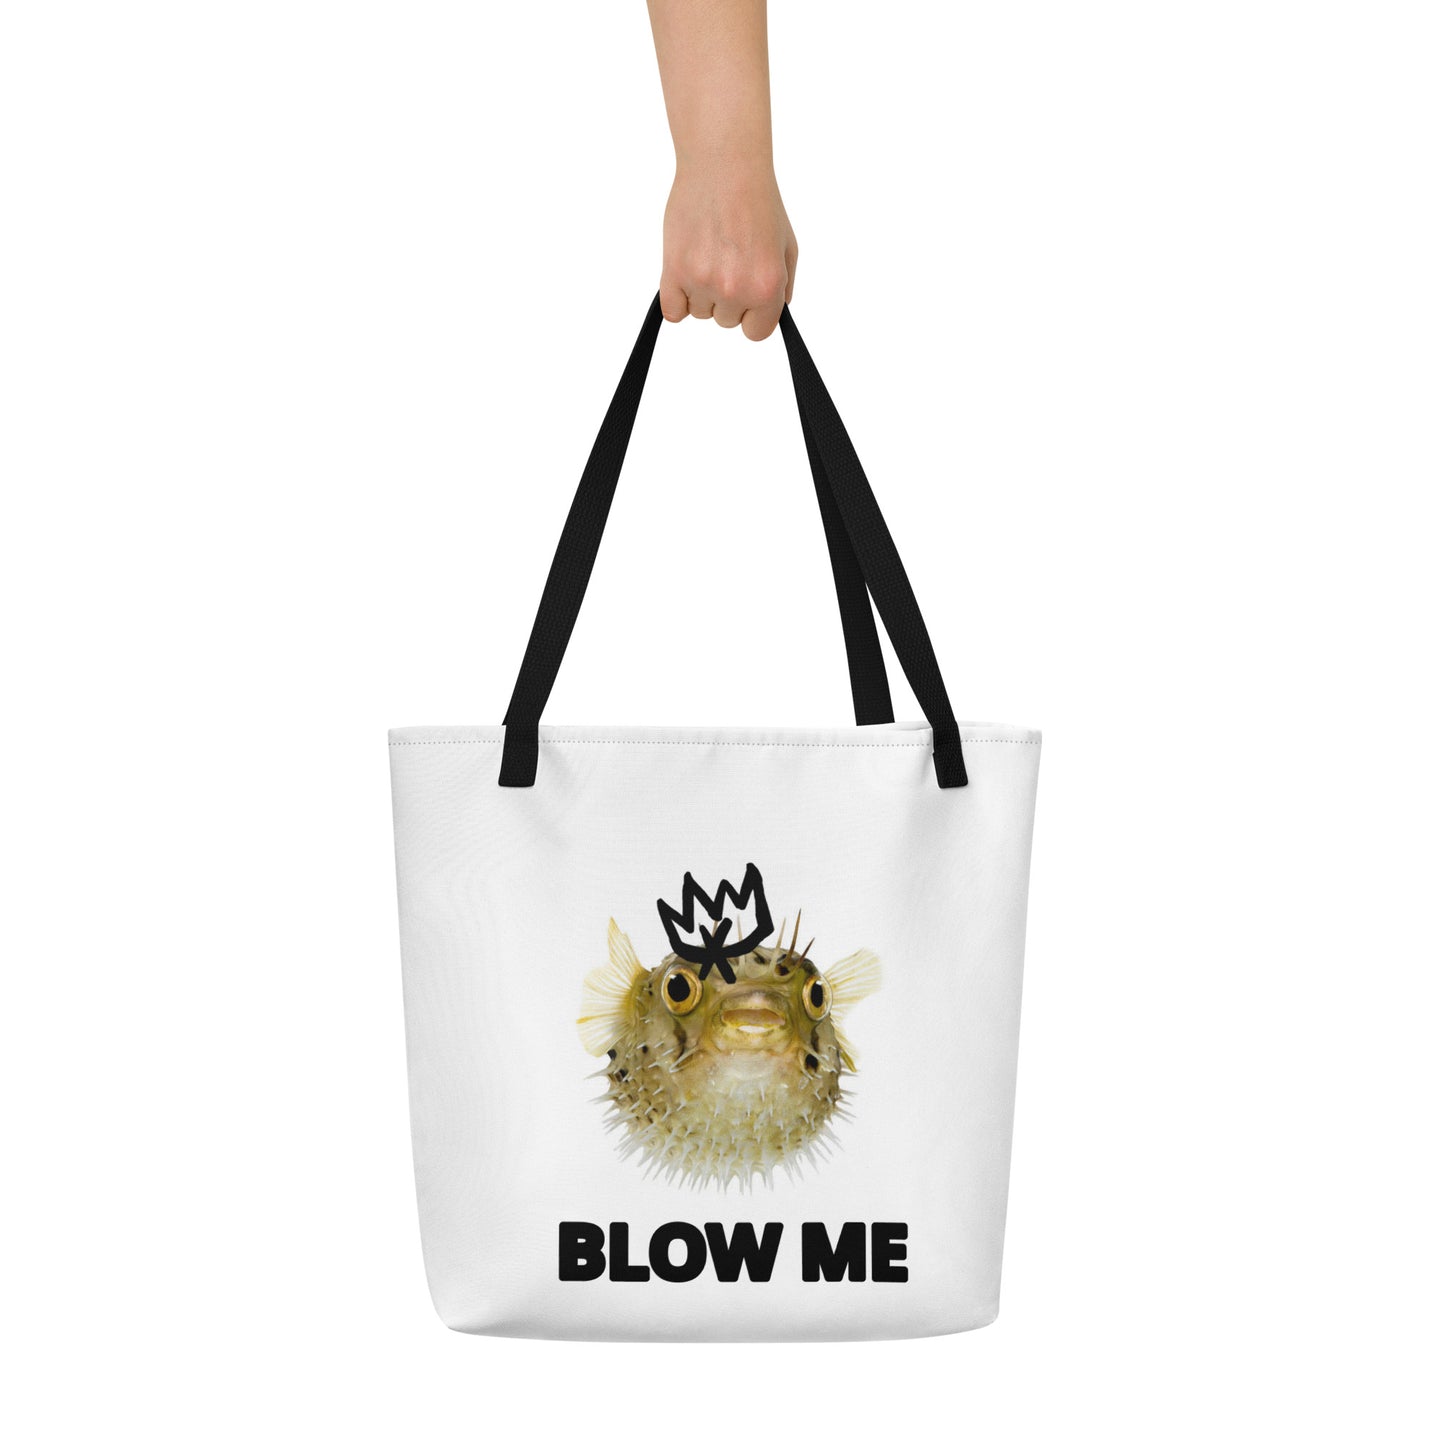 Blow Me Large Tote Bag